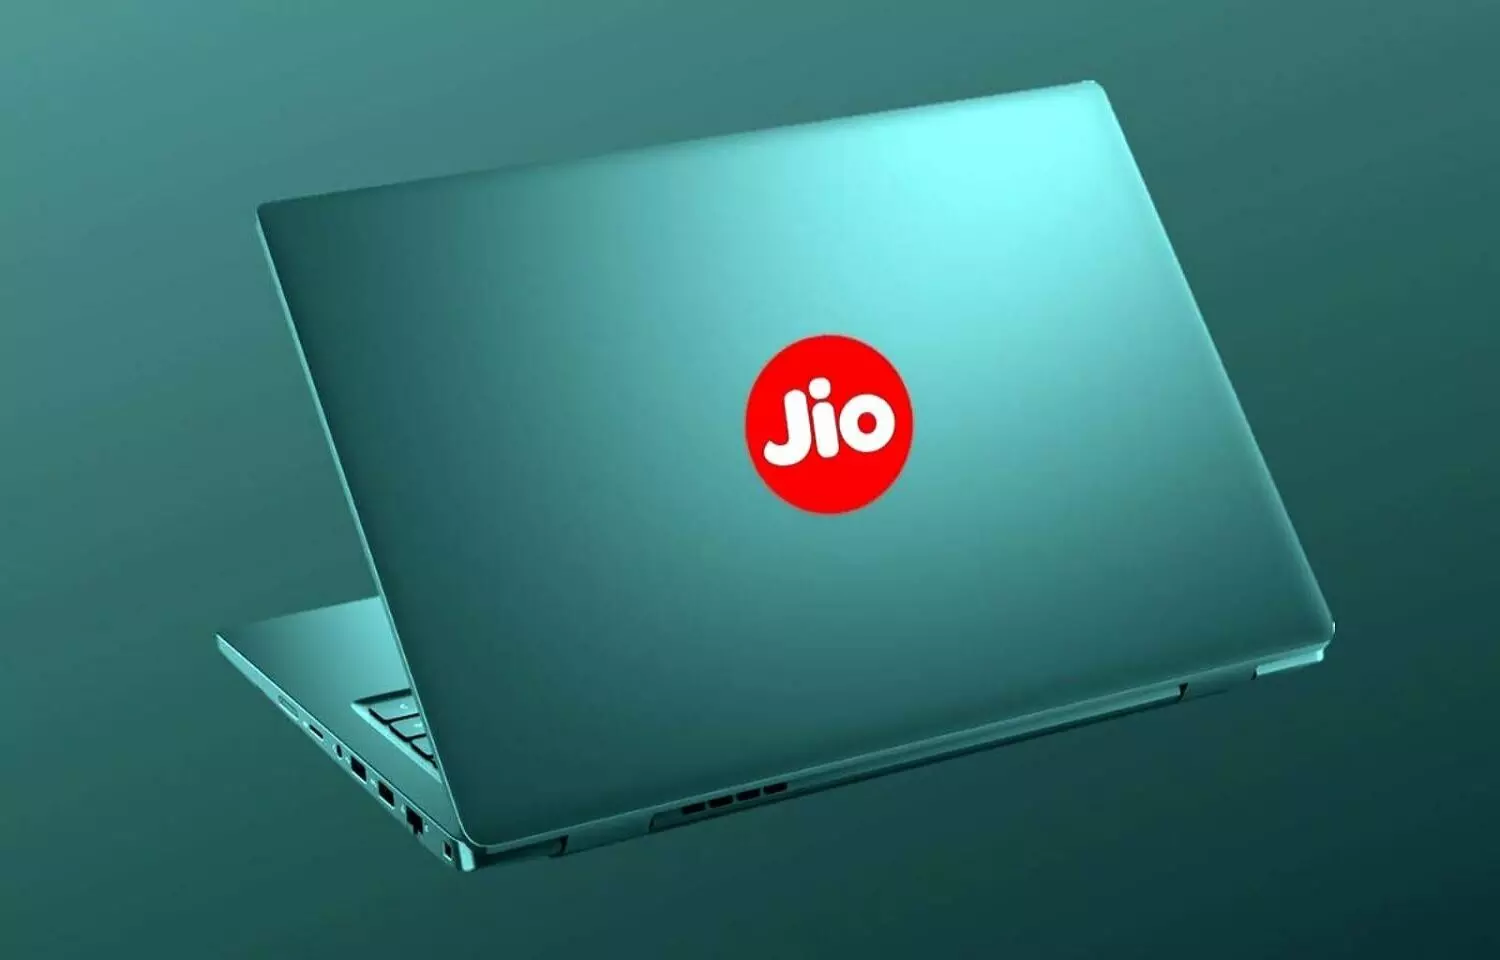 Jiobook : Jio का लैपटॉप लेने से अच्छा है, खुद ही पैसों को आग लगा दें, जानें स्पेसिफिकेशन और कमियां